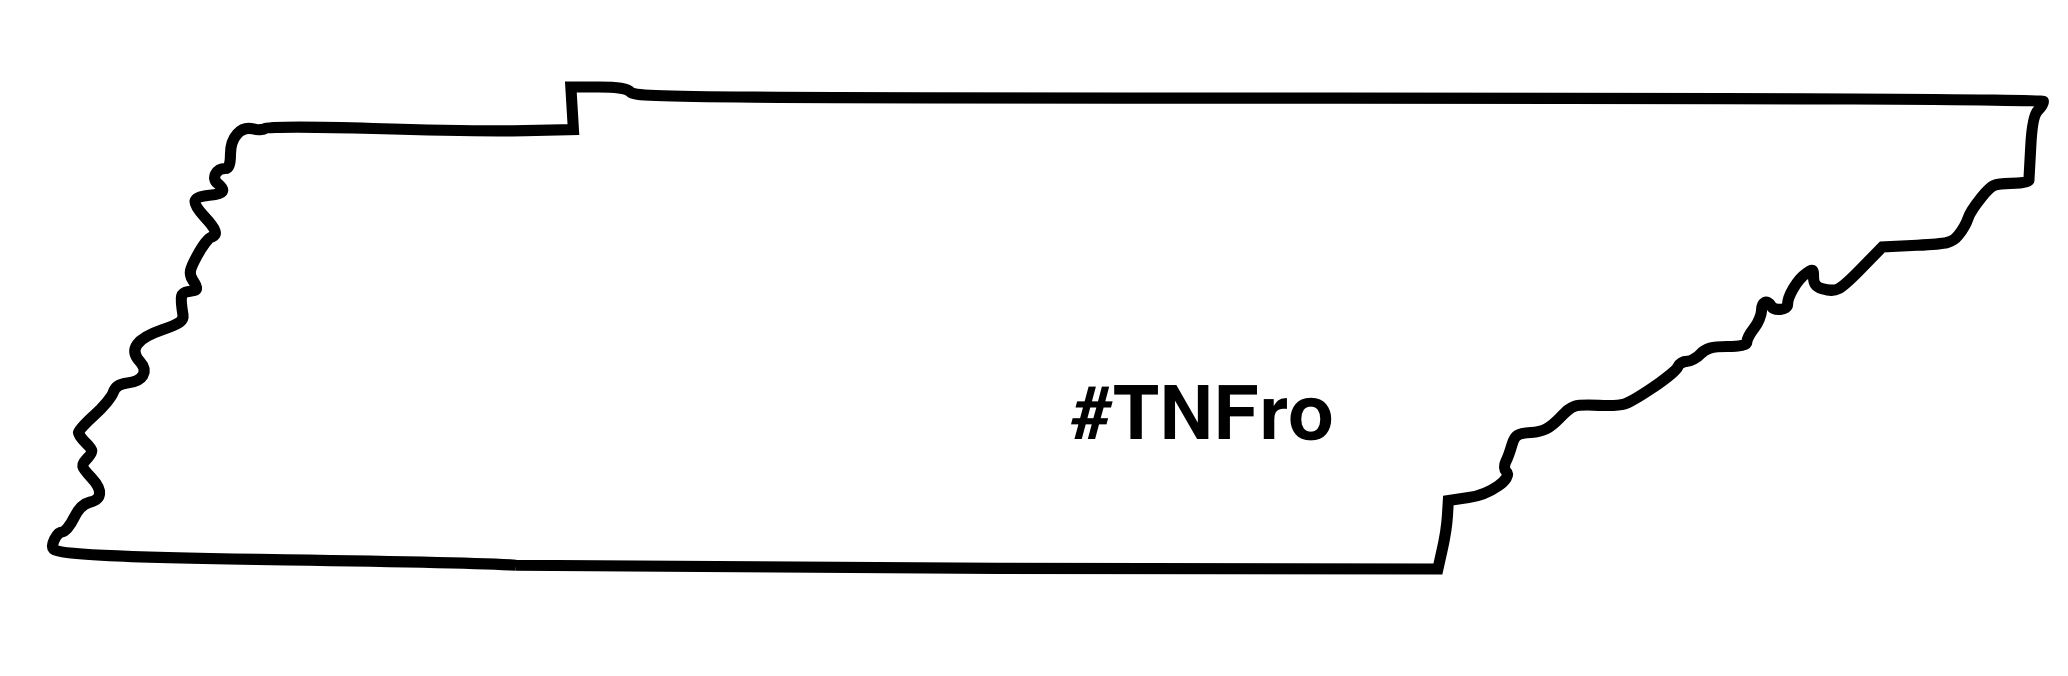 TNFro_Logo8qfdc.png